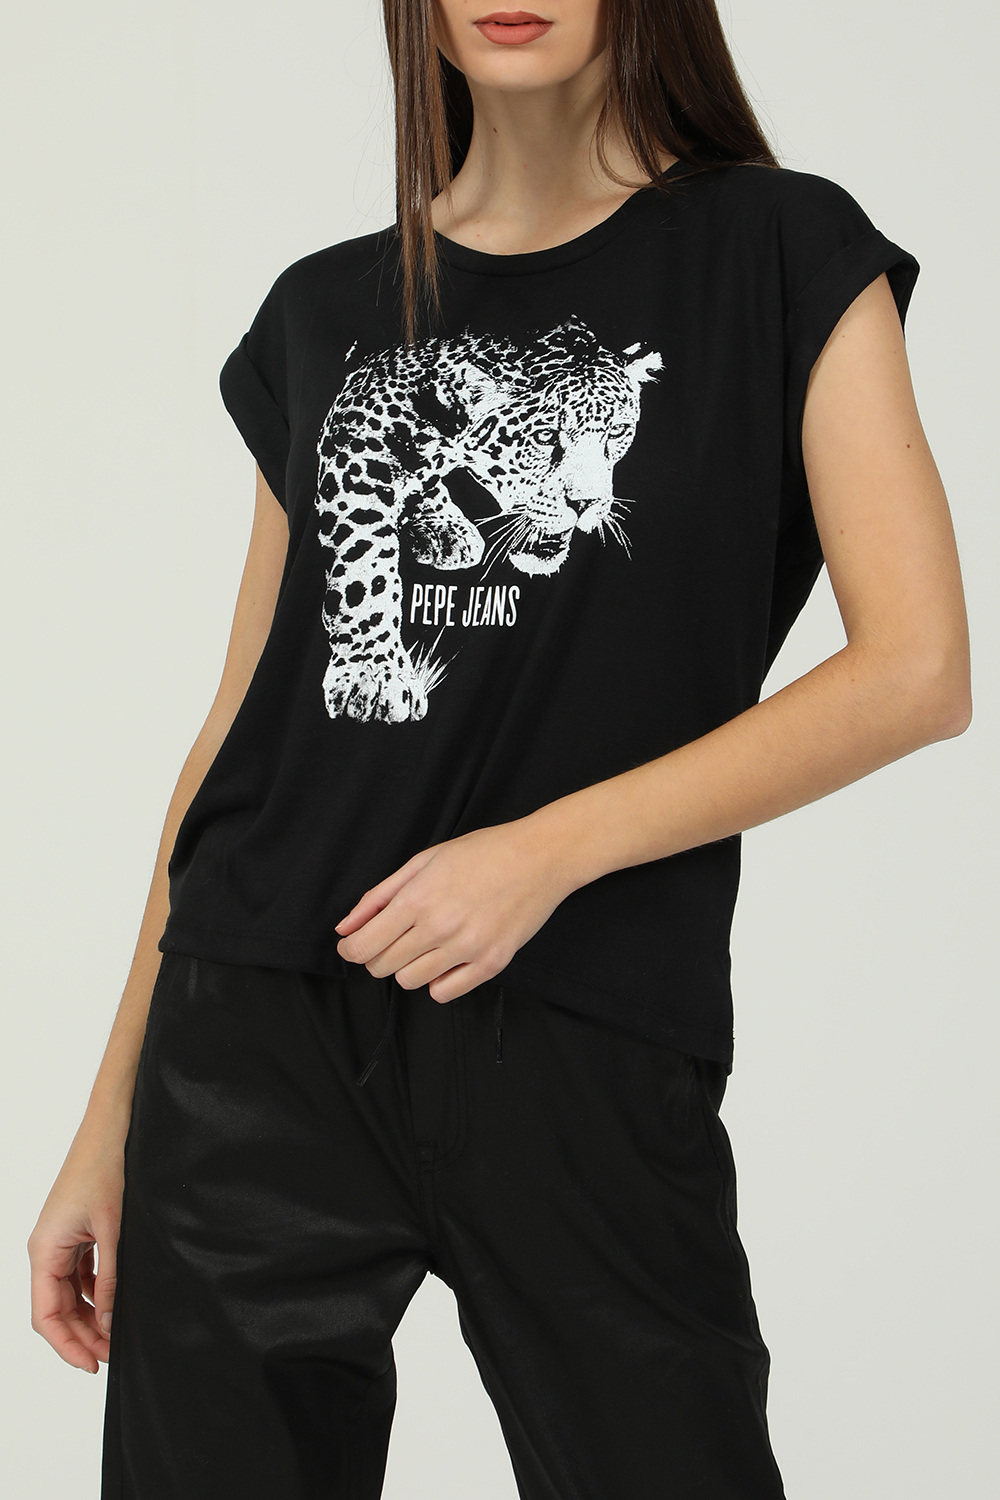 Γυναικεία/Ρούχα/Μπλούζες/Κοντομάνικες PEPE JEANS - Γυναικεία κοντομάνικη μπλούζα PEPE JEANS PANTI μαύρη